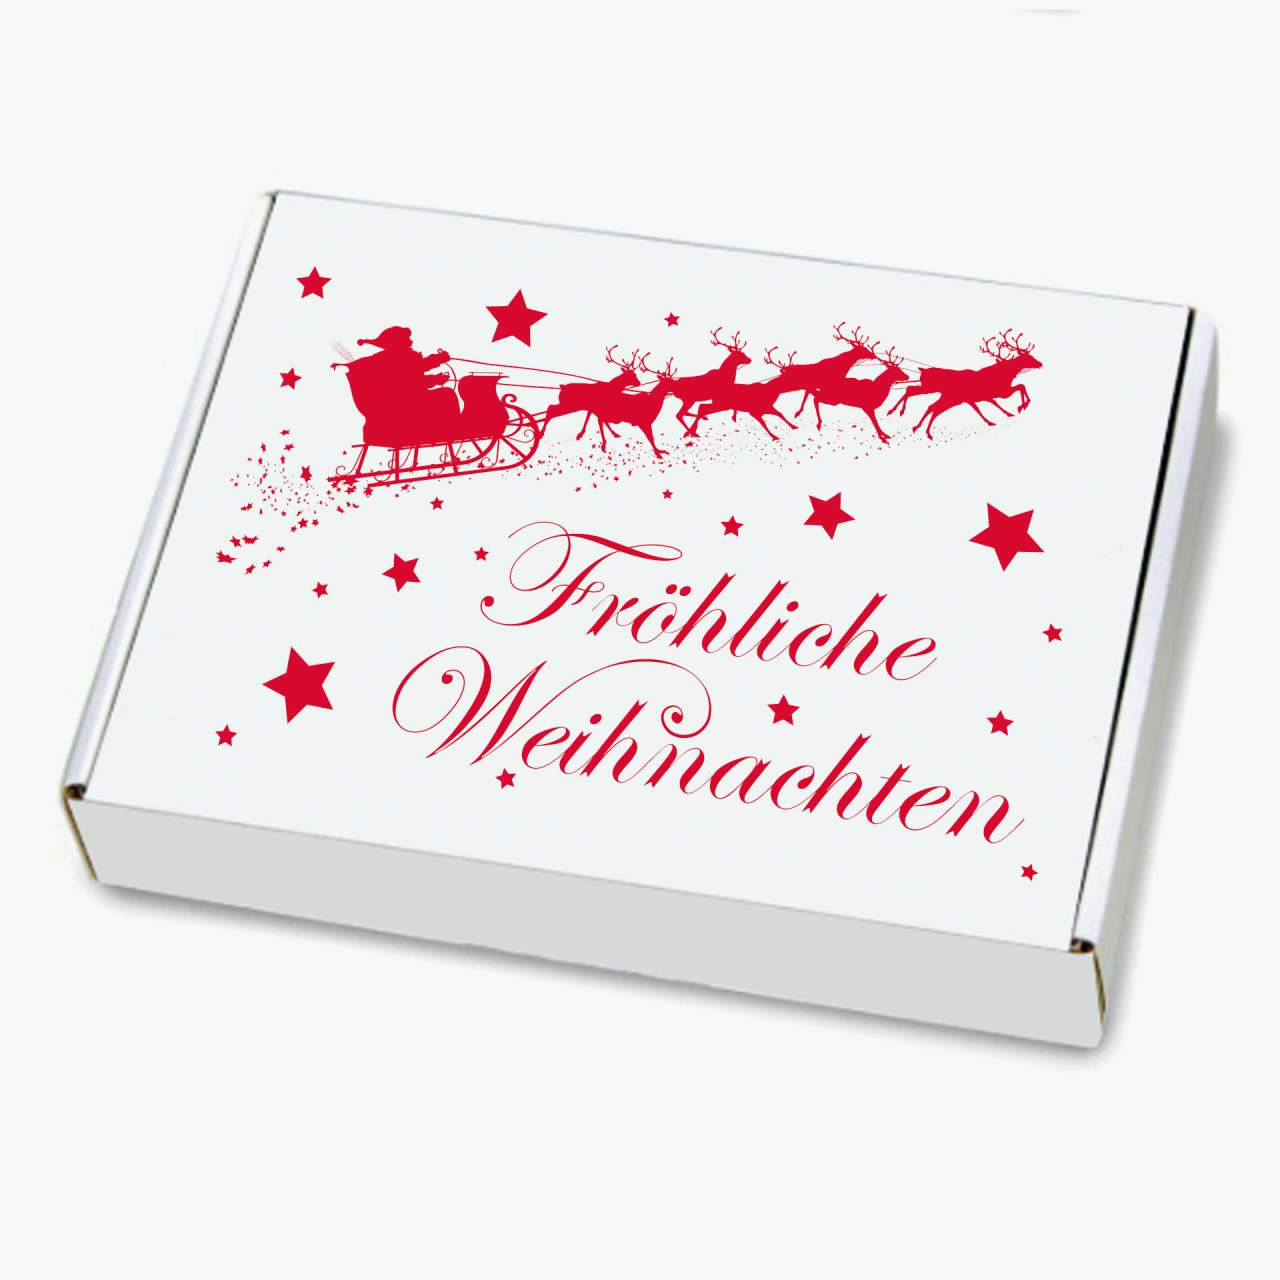 WIHEDÜ Weihnachtskarton - Weihnachtsschlitten (250 x 174 x 50 mm)